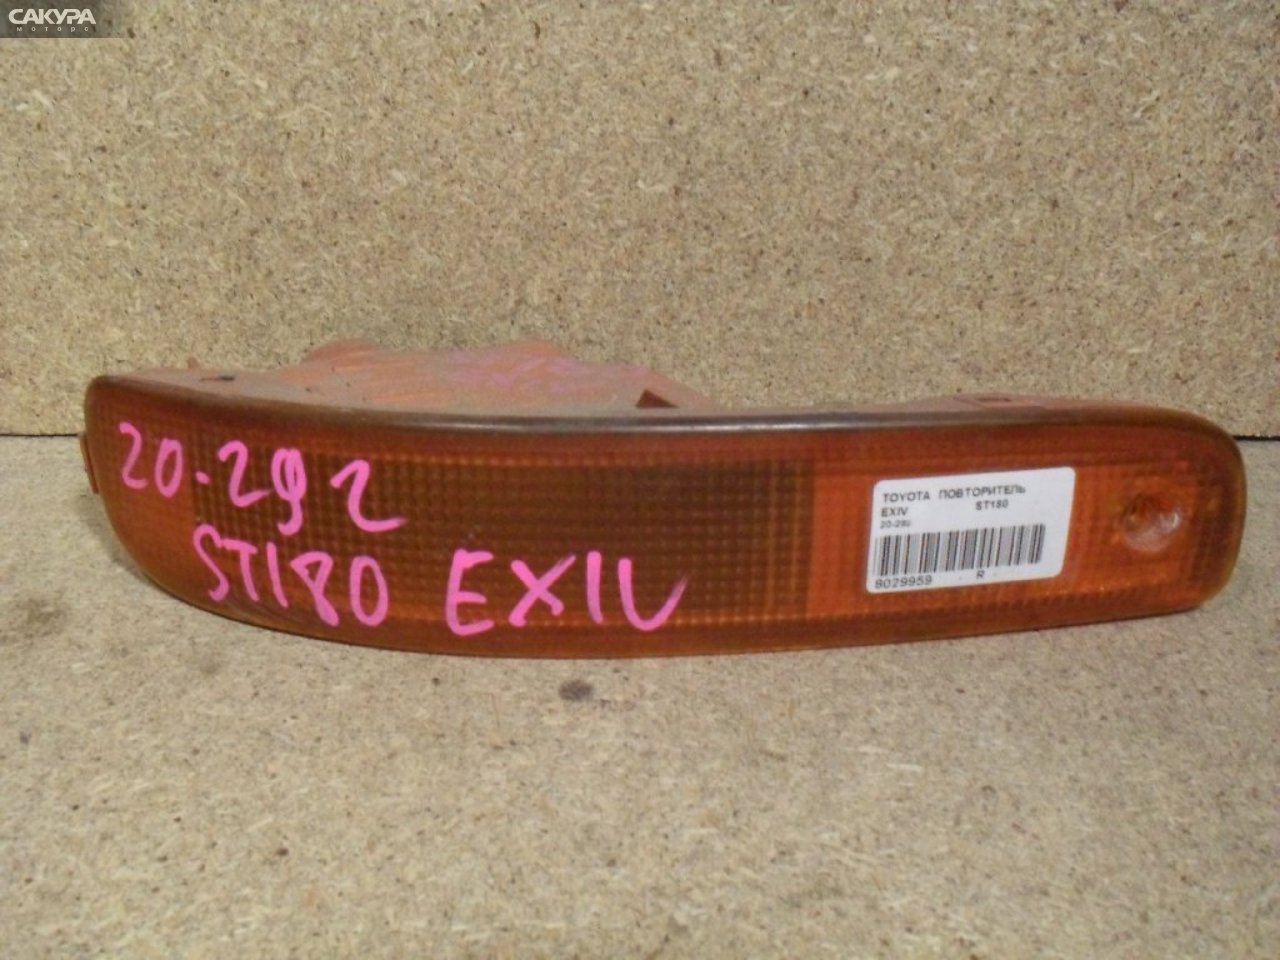 Повторитель правый Toyota Corona Exiv ST180 20-292: купить в Сакура Абакан.